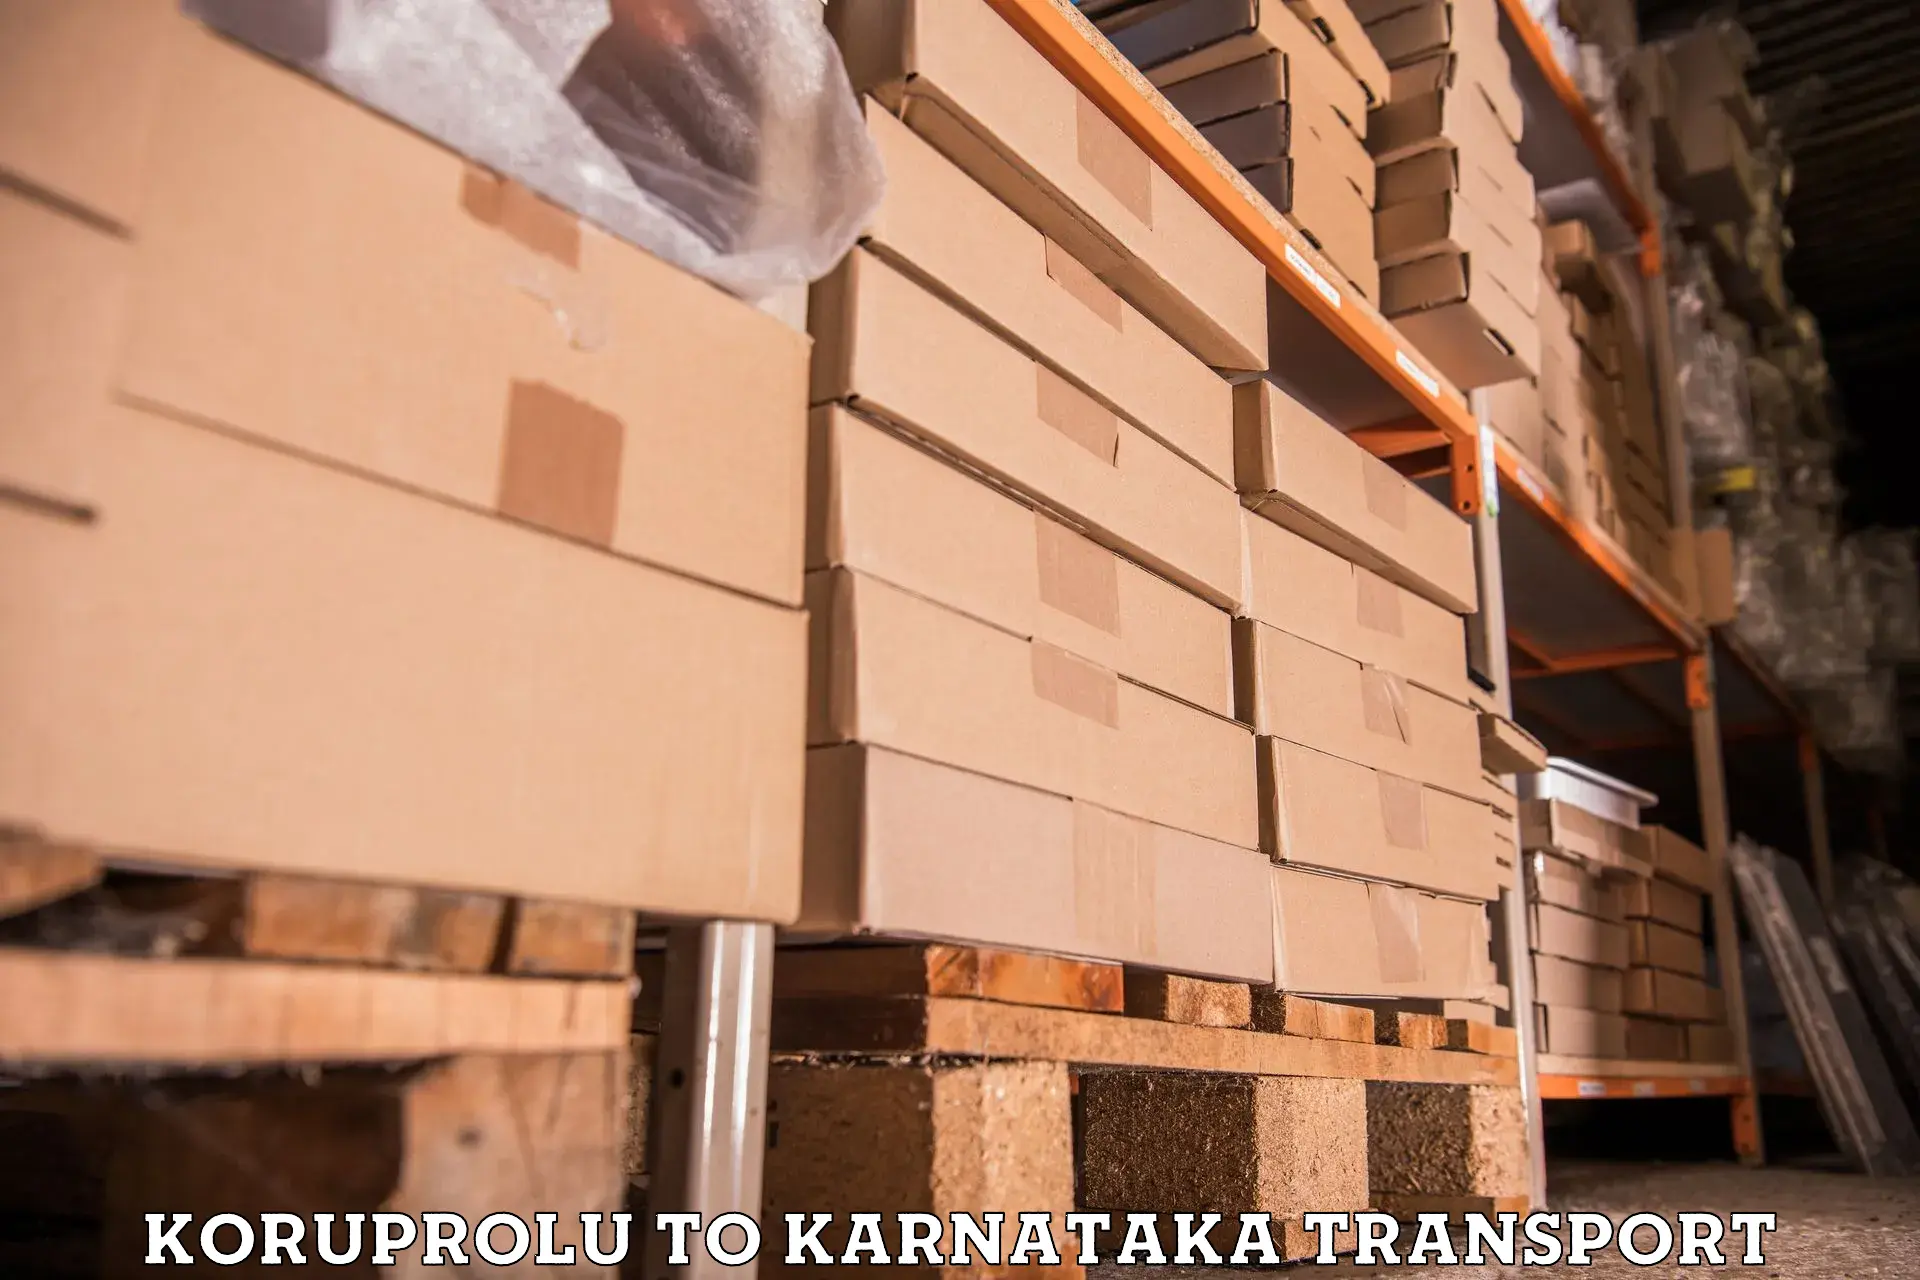 Container transport service Koruprolu to Bengaluru